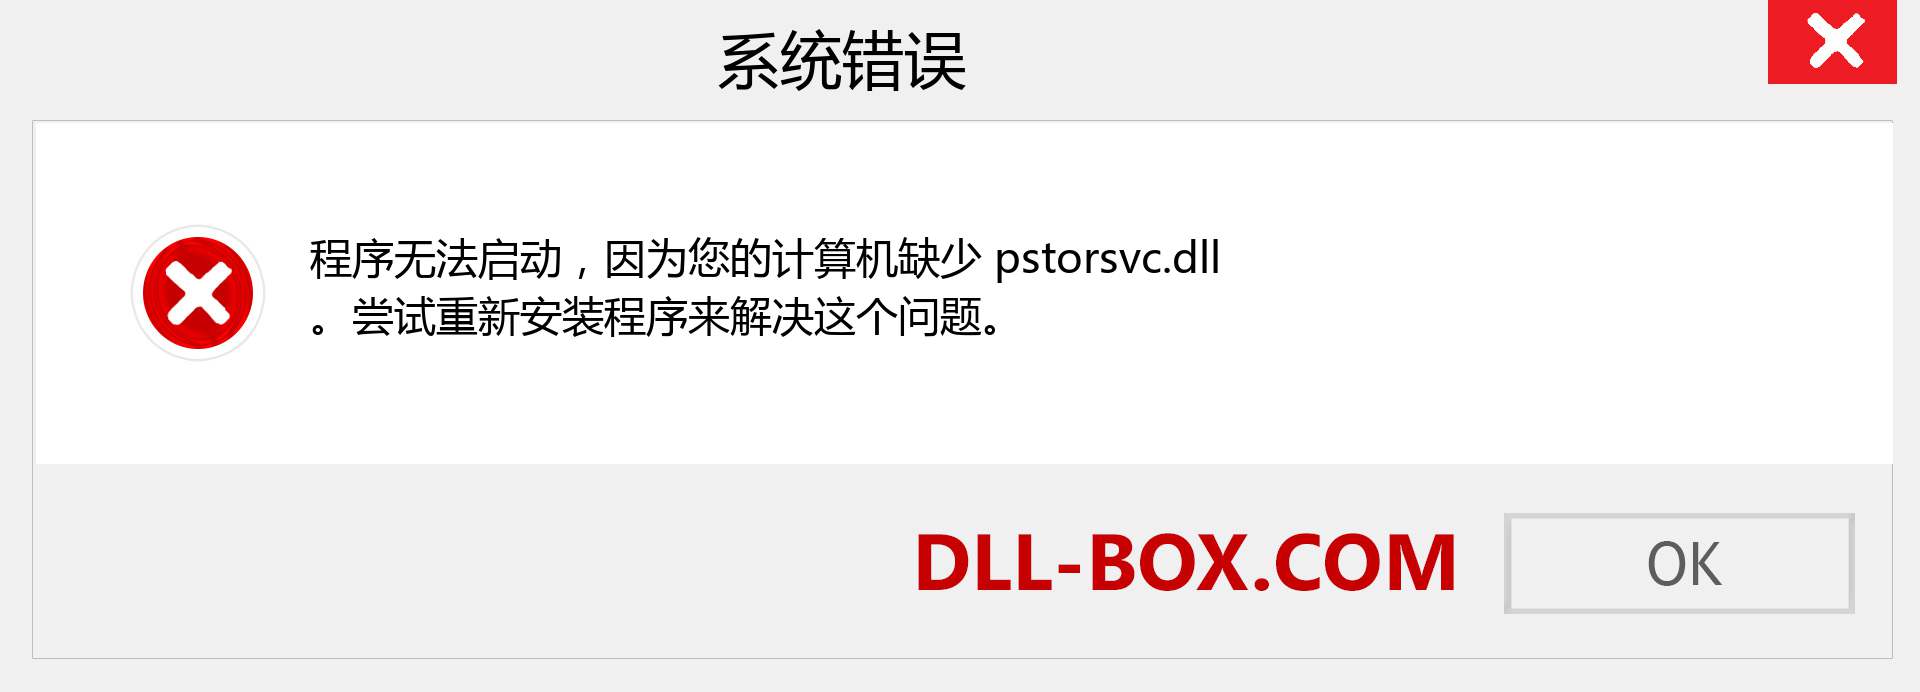 pstorsvc.dll 文件丢失？。 适用于 Windows 7、8、10 的下载 - 修复 Windows、照片、图像上的 pstorsvc dll 丢失错误